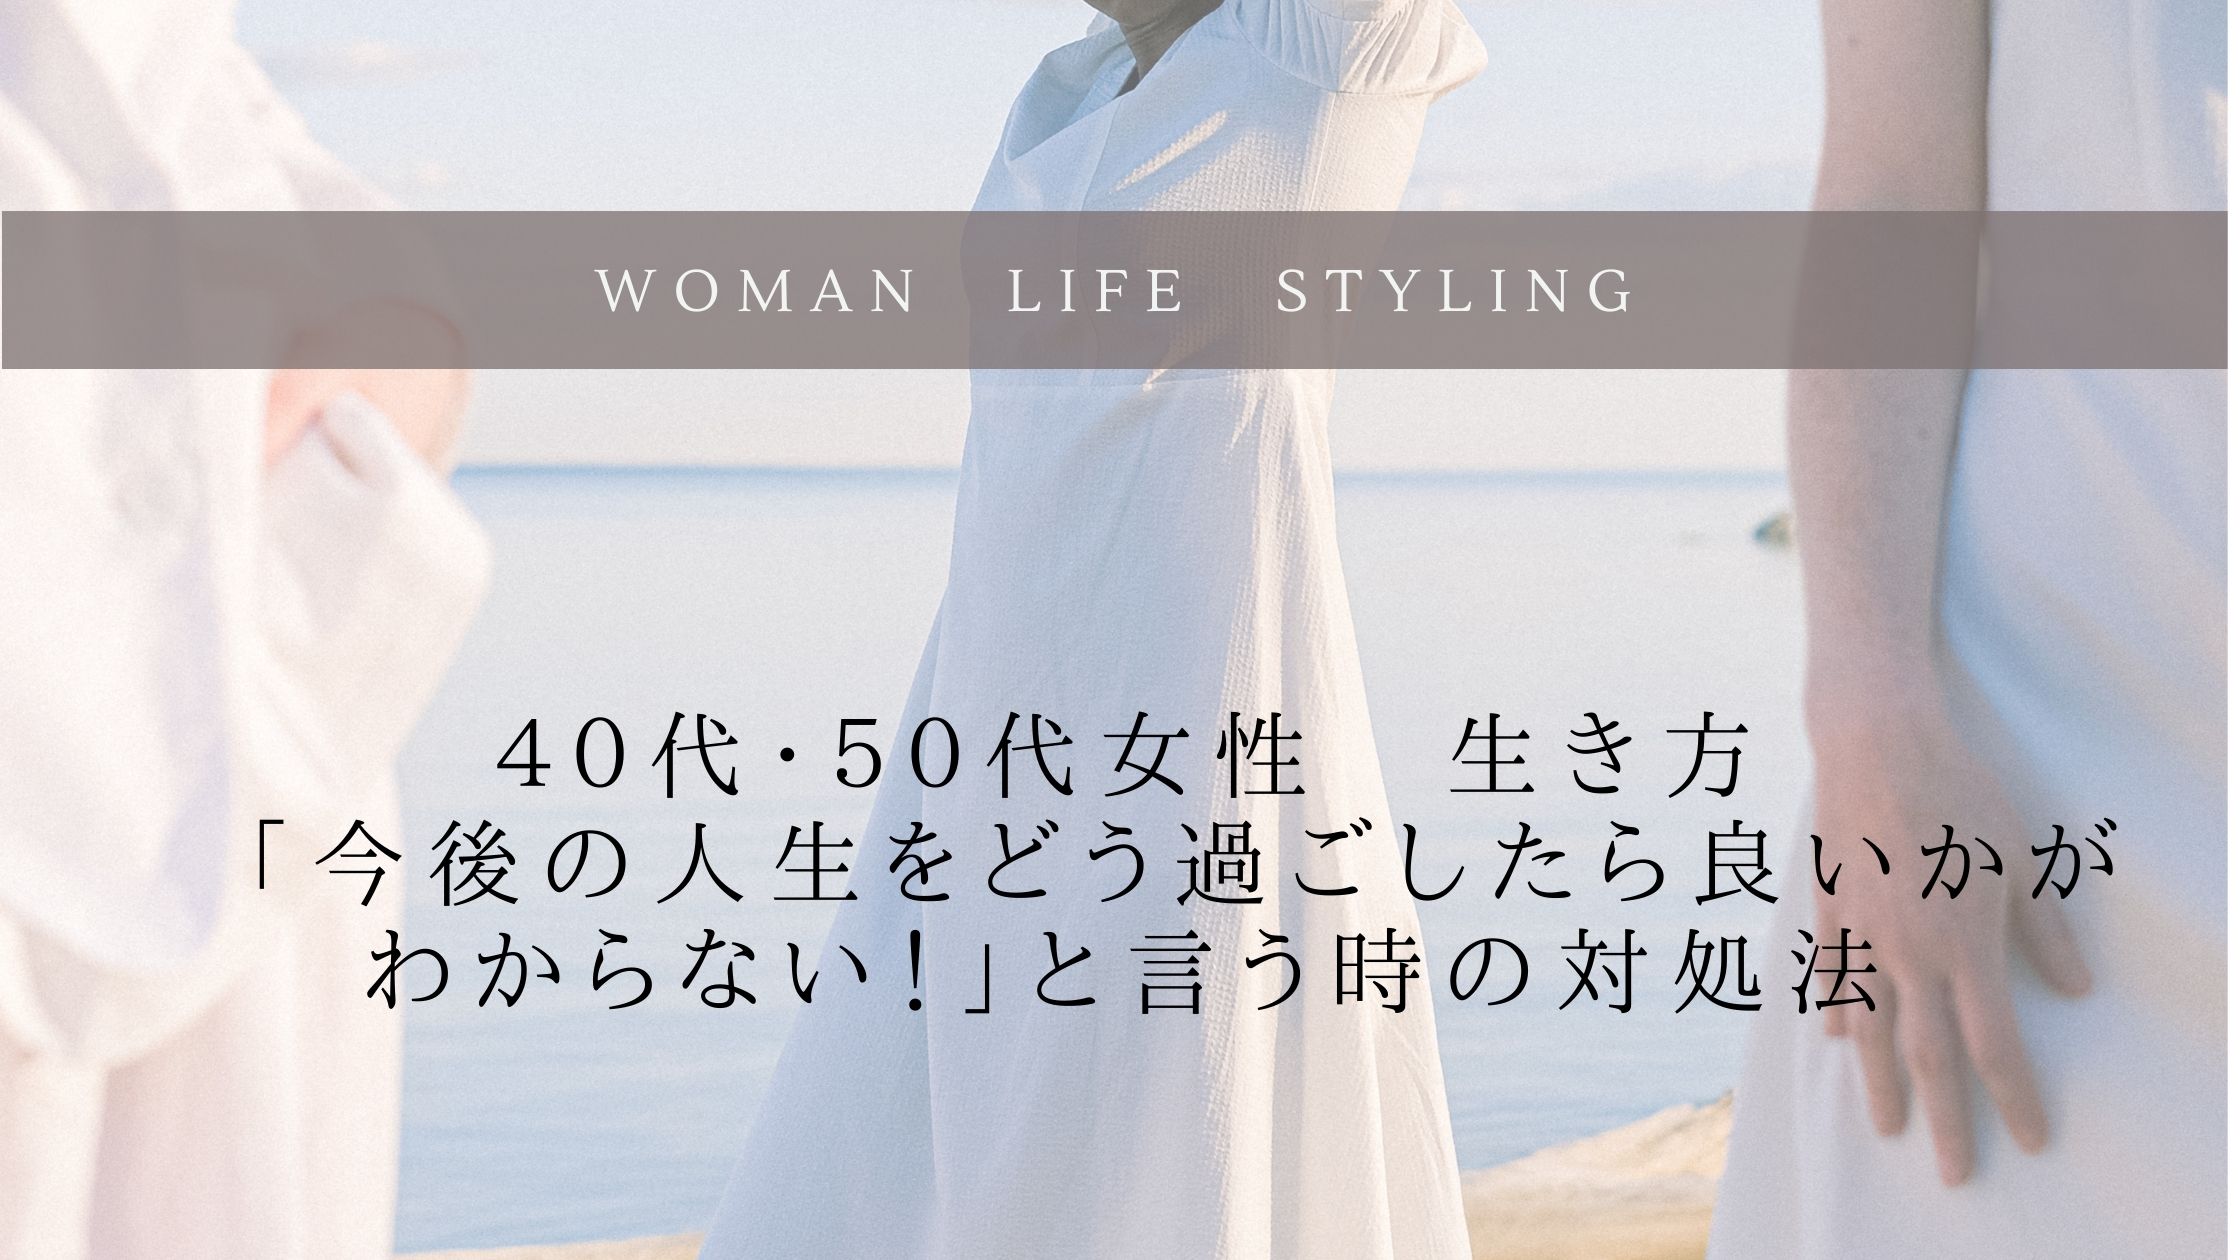 【40代、50代女性の生き方】今後の人生をどう過ごしたら良いかがわからないと言う時の対処法 小林雅子 オフィシャルサイト